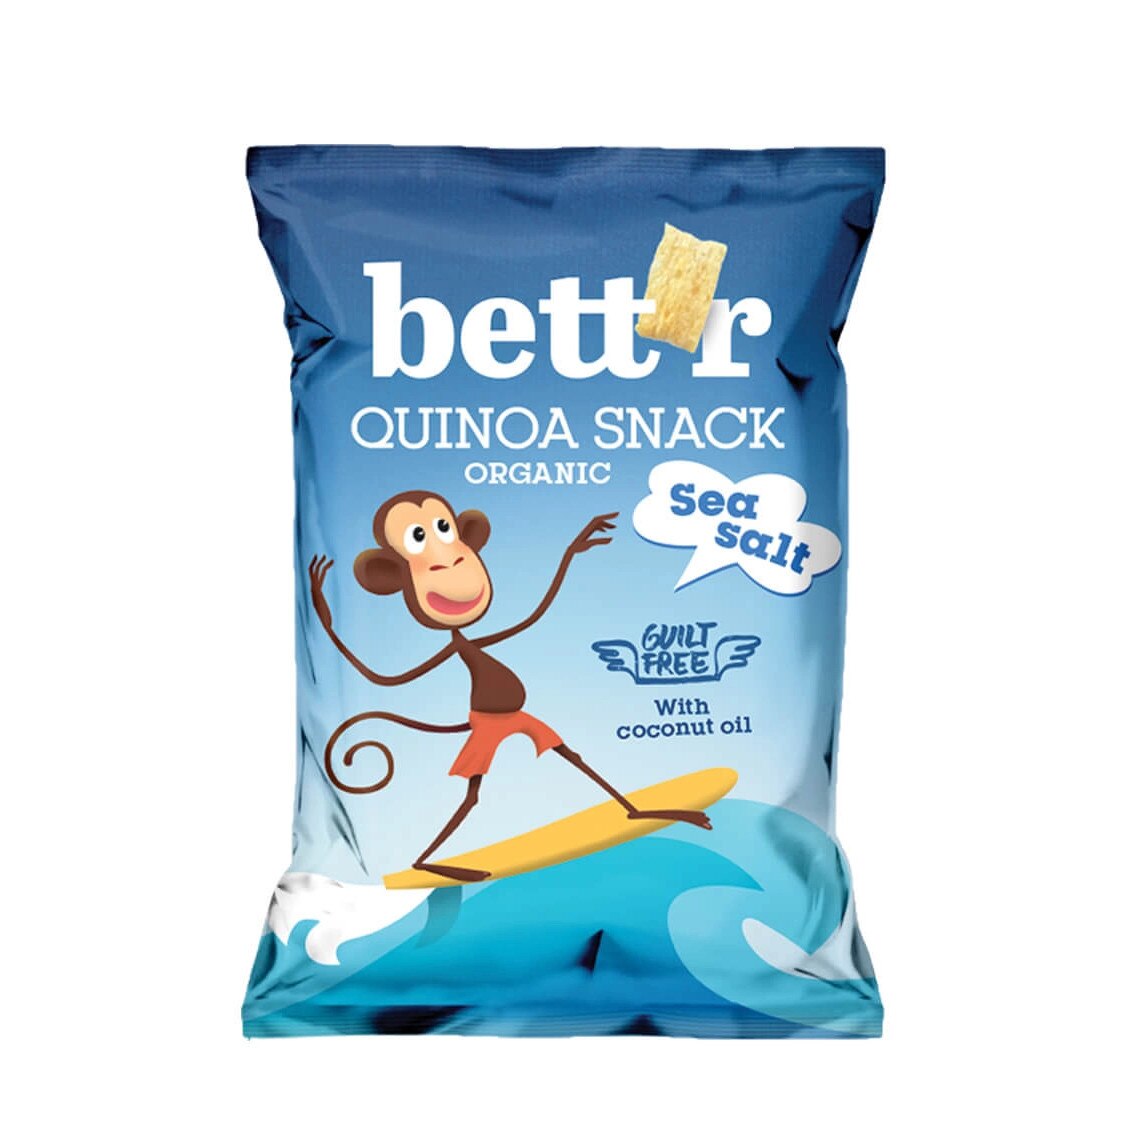 Quinoa snack cu sare bio, 50g, Bettr